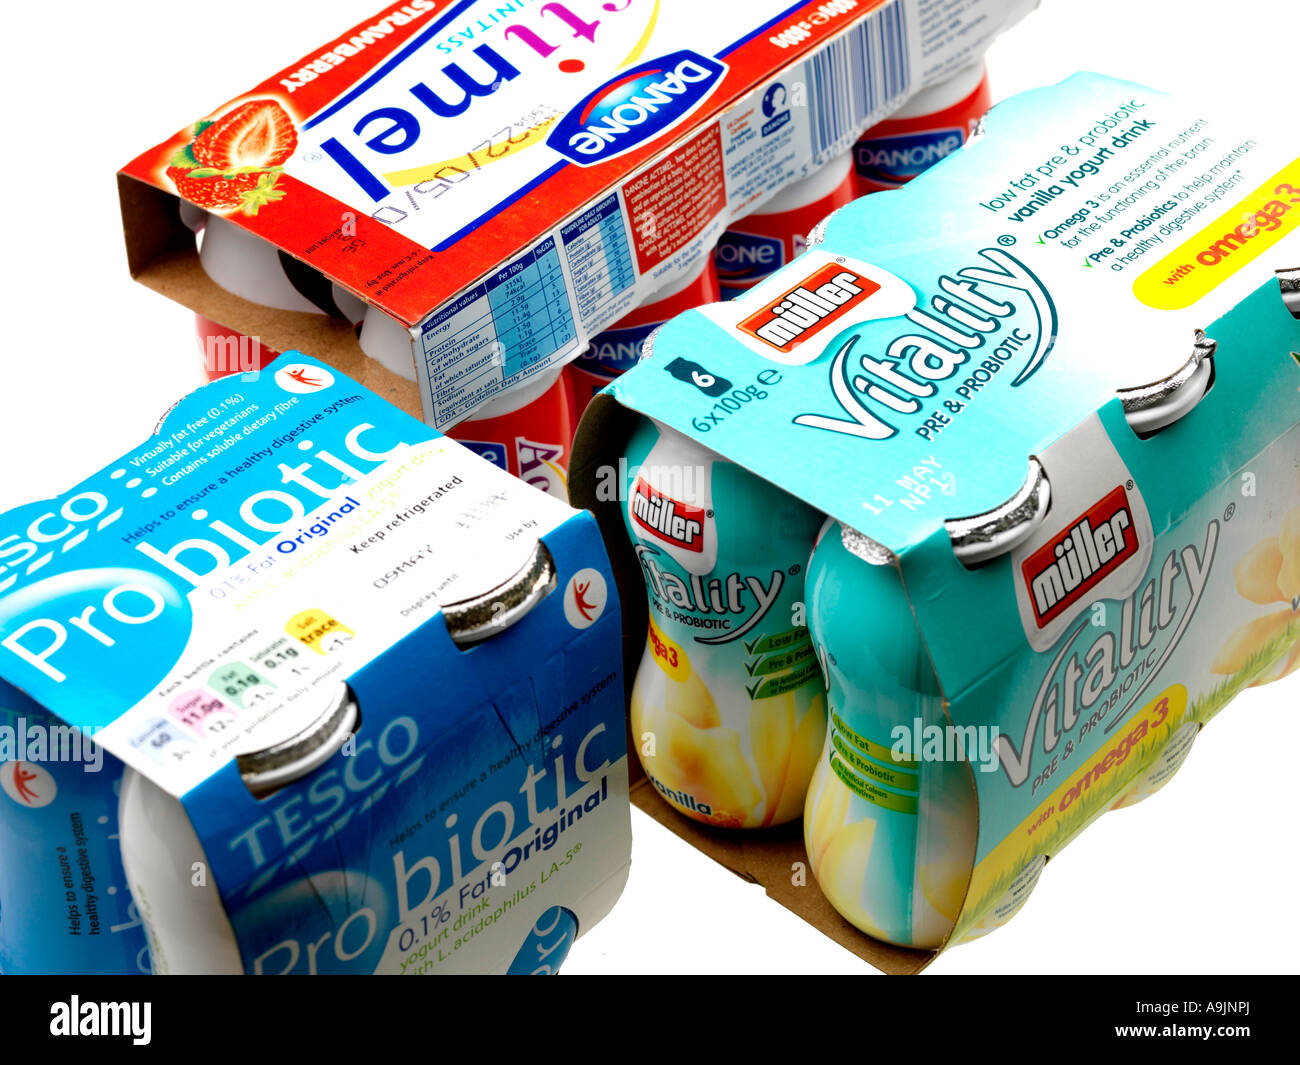 Probiotischen Joghurt Drinks Stockfotografie - Alamy